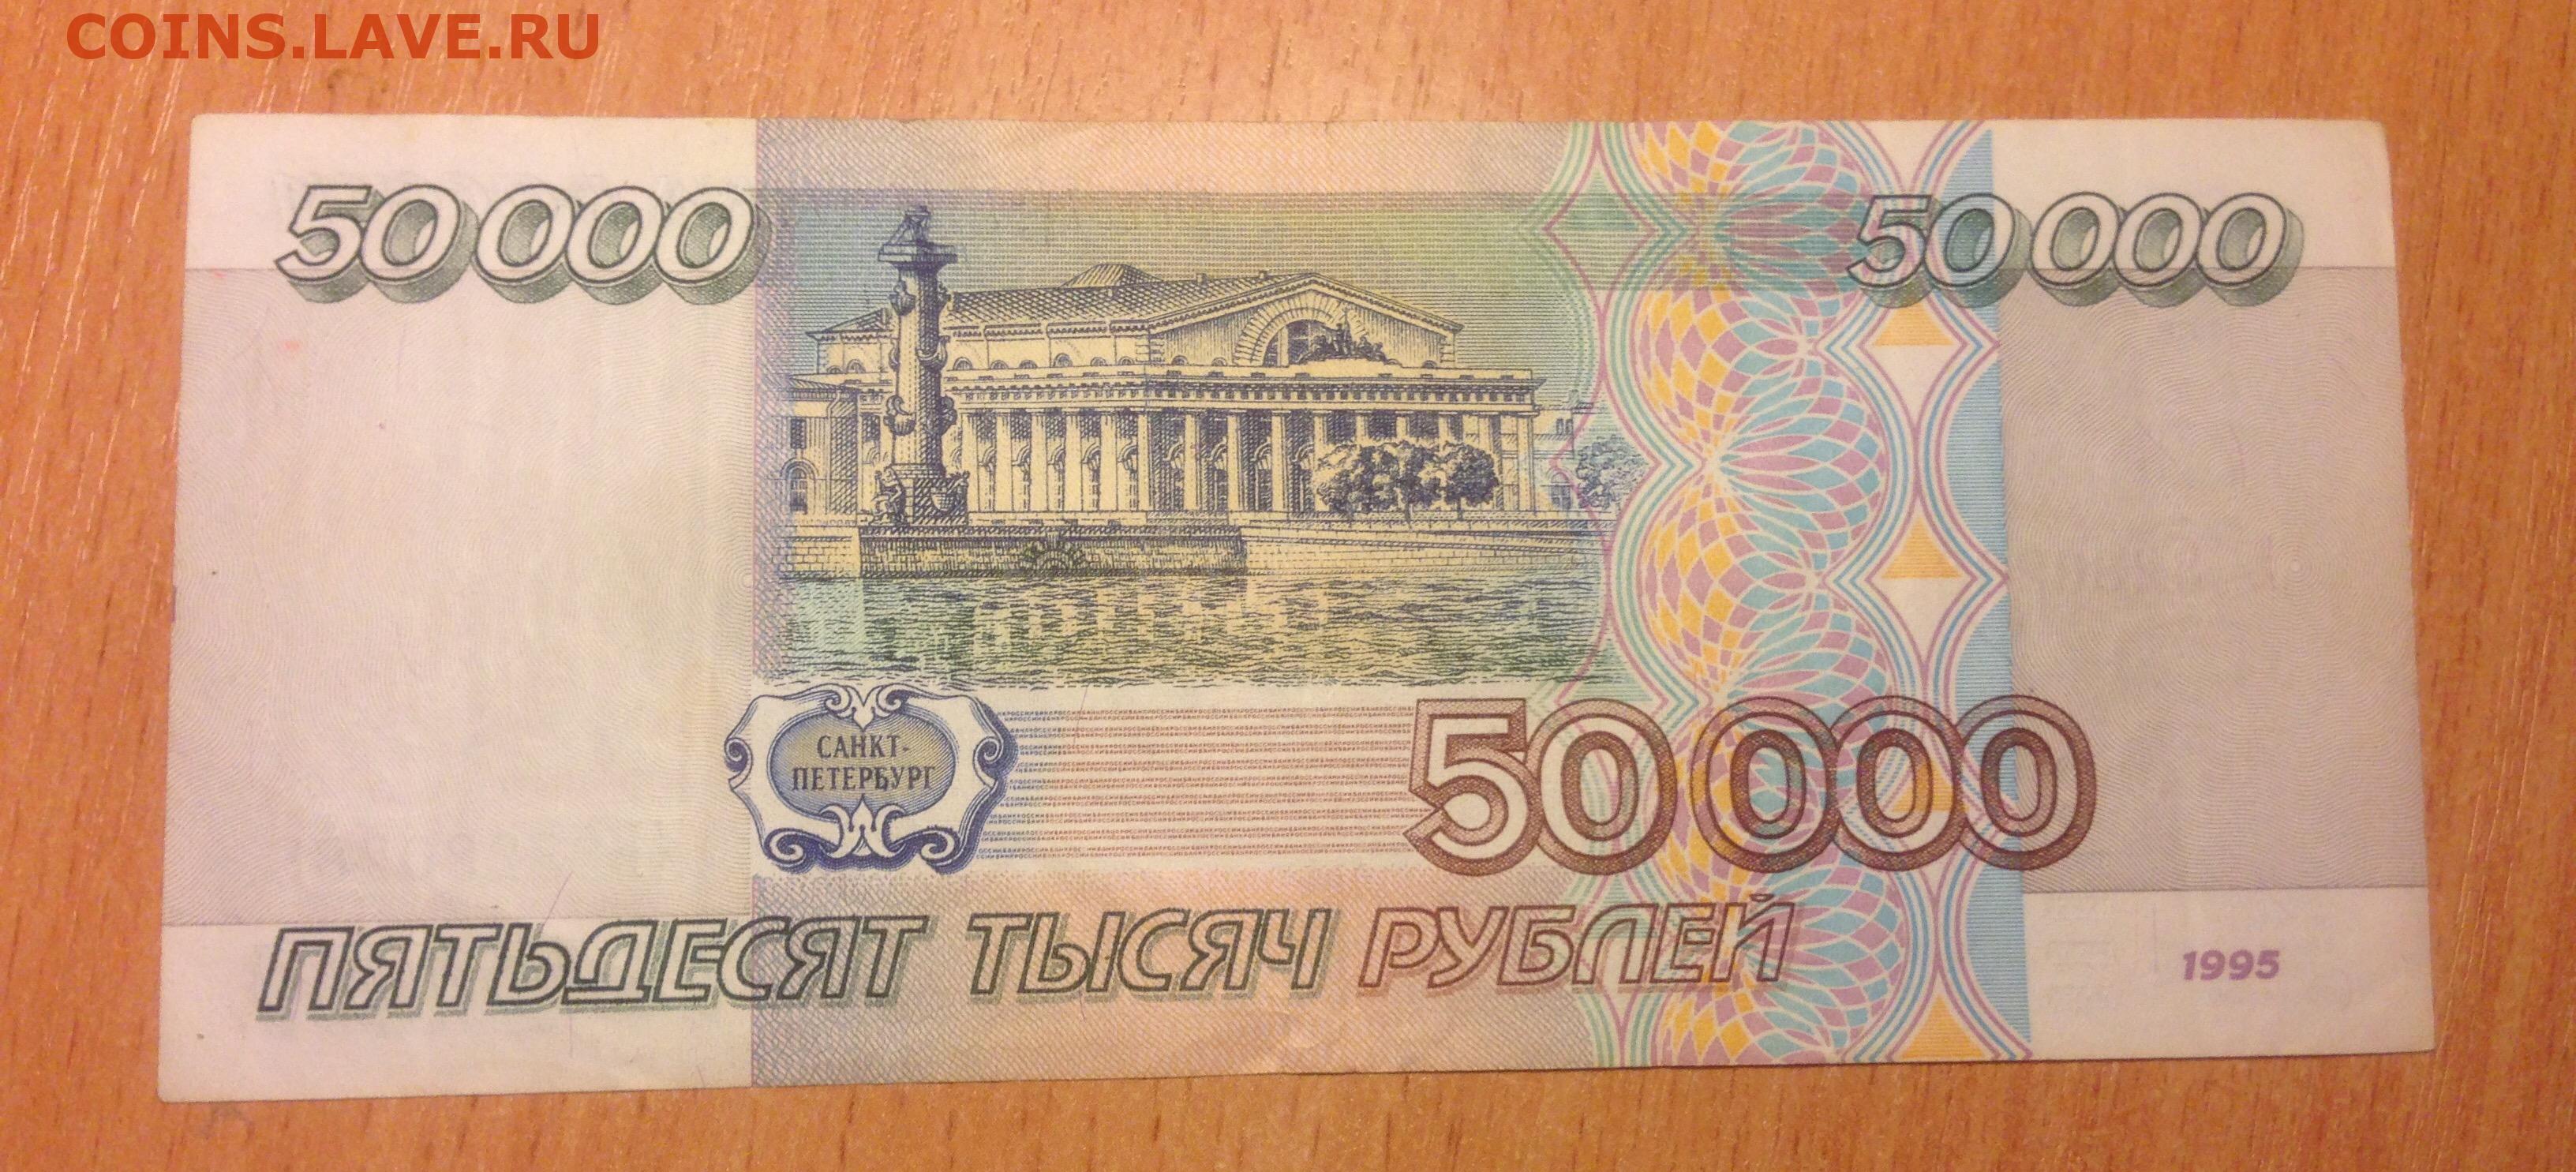 5000 рублей 1995. 50000 Рублей 1995. 50000 Рублей 1995 года. 5000 Рублей 1995 года. Банкнота 5000 рублей 1995.